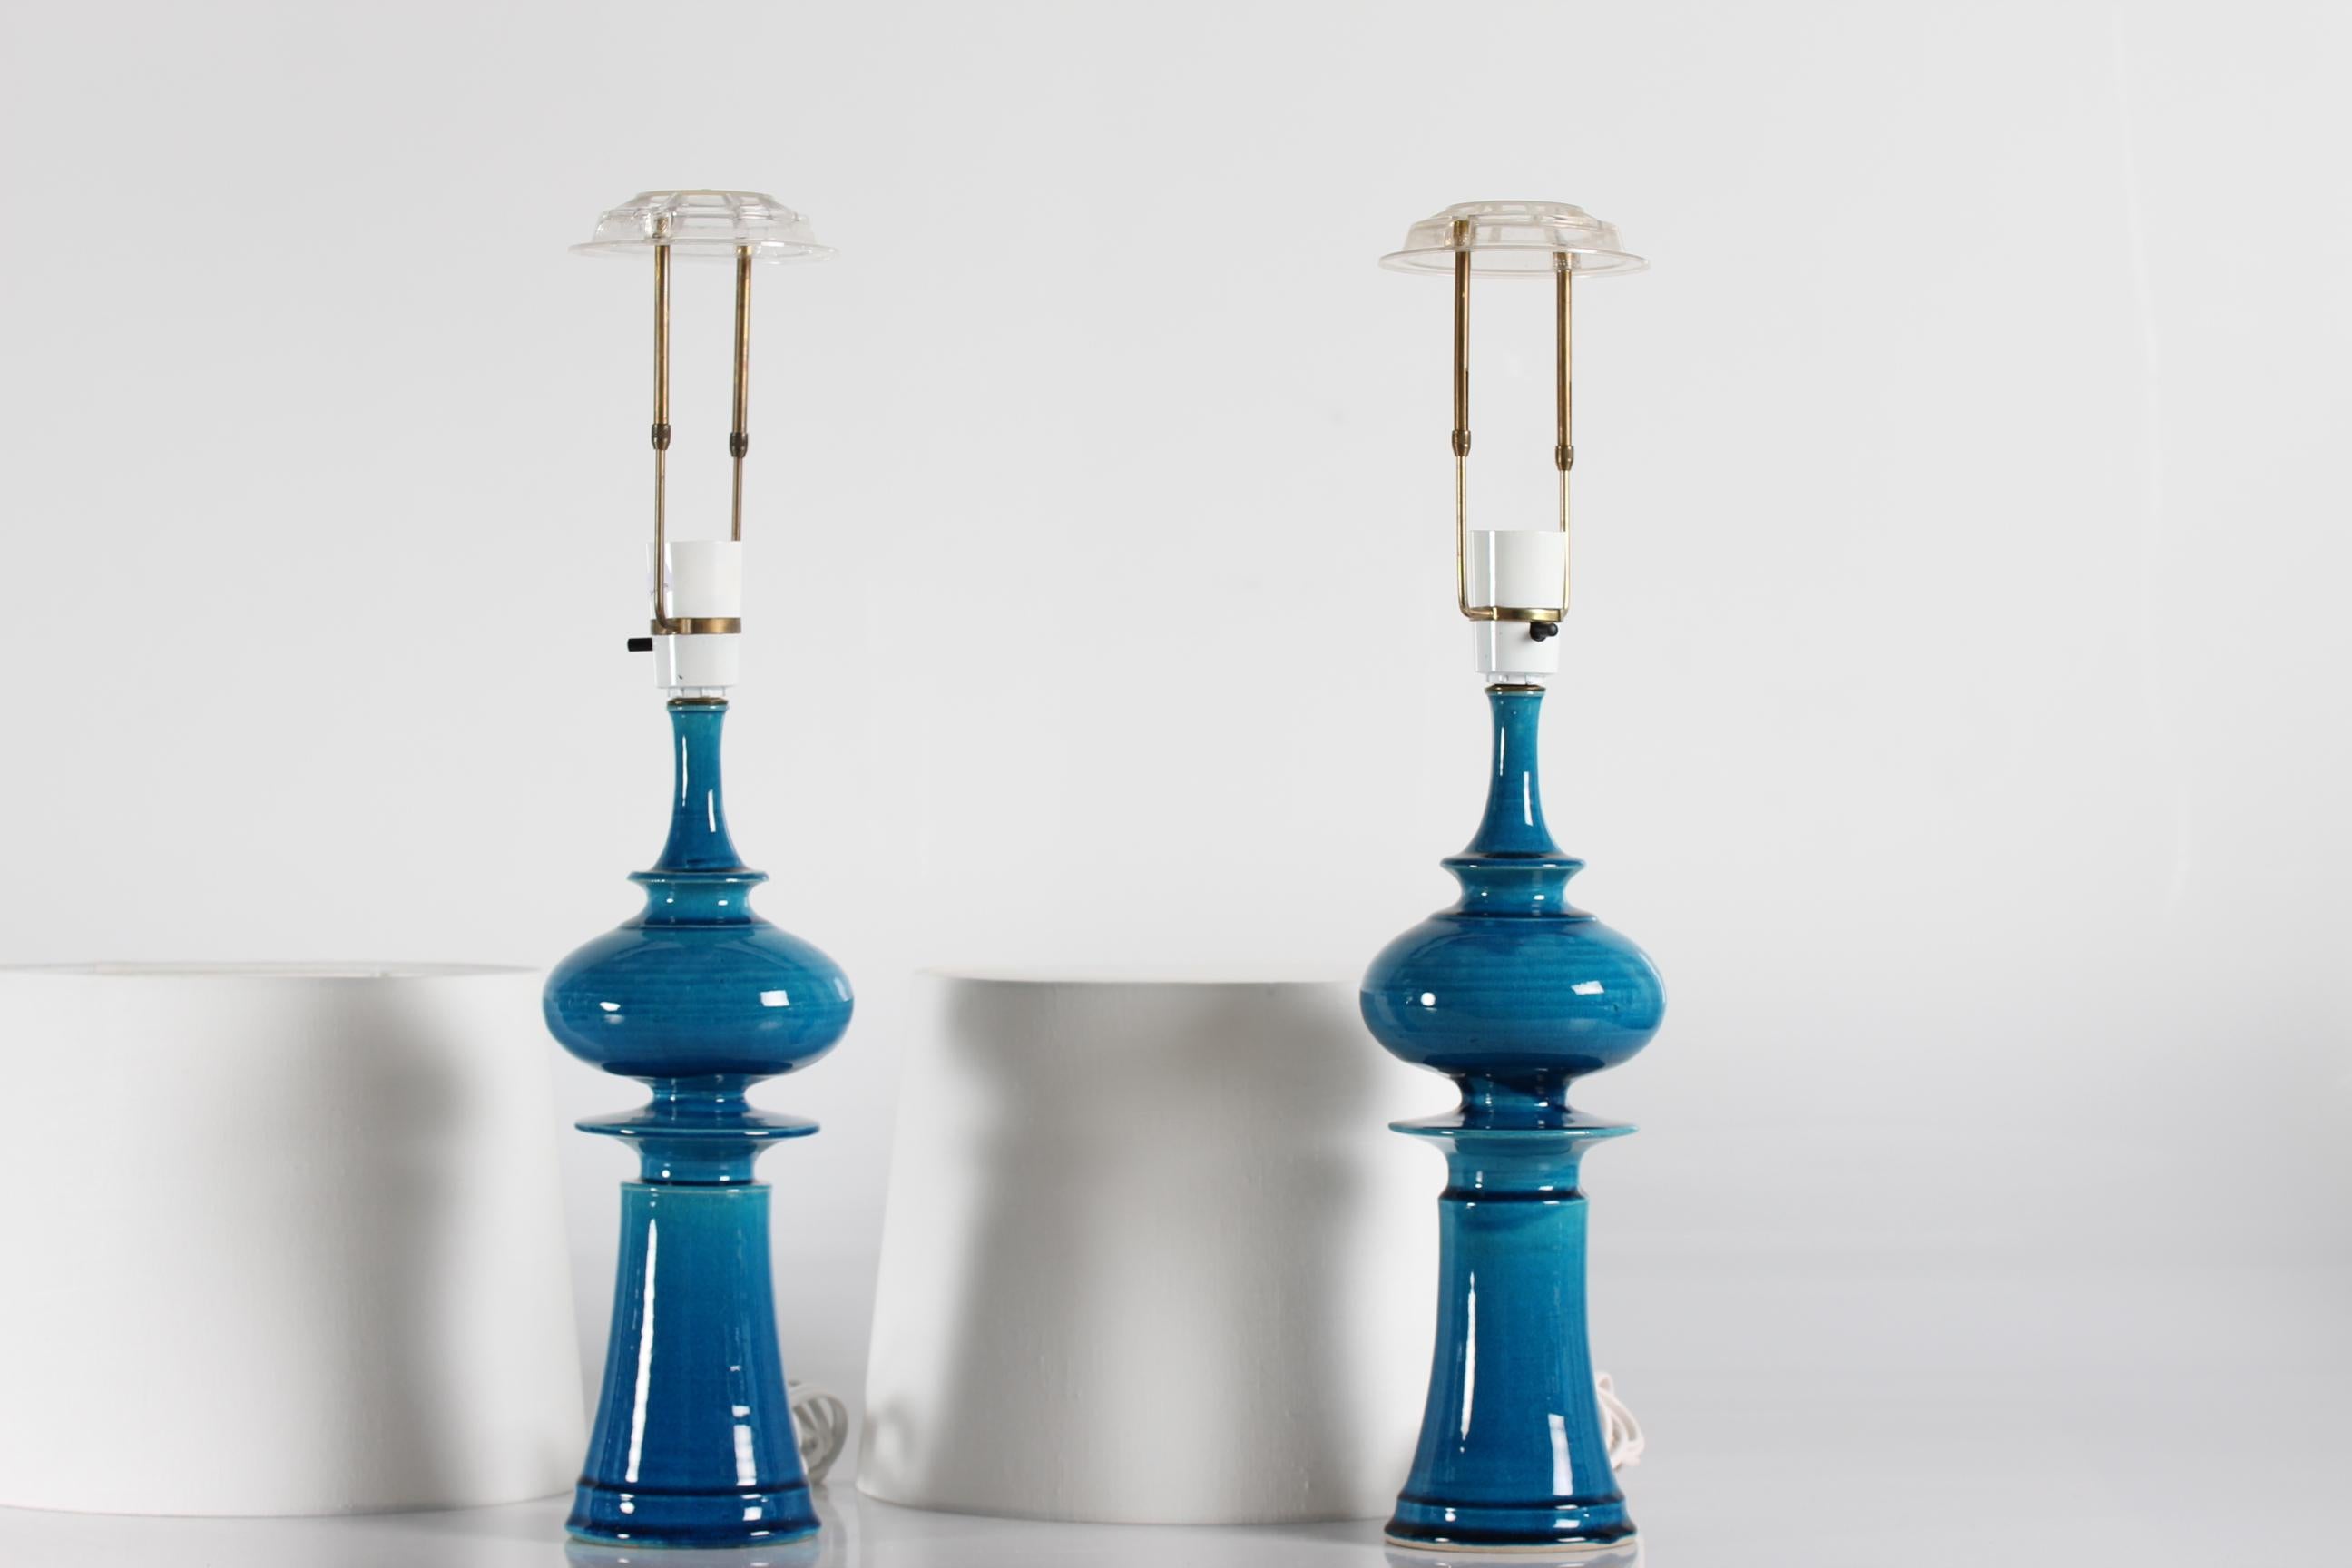 Paire de lampes de table hautes et sculpturales de Poul Erik Eliasen pour le studio de céramique Kähler (HAK). 
Les lampes sont en grès avec une glaçure brillante de couleur turquoise et ont été fabriquées vers les années 1970.

Marqué sur le